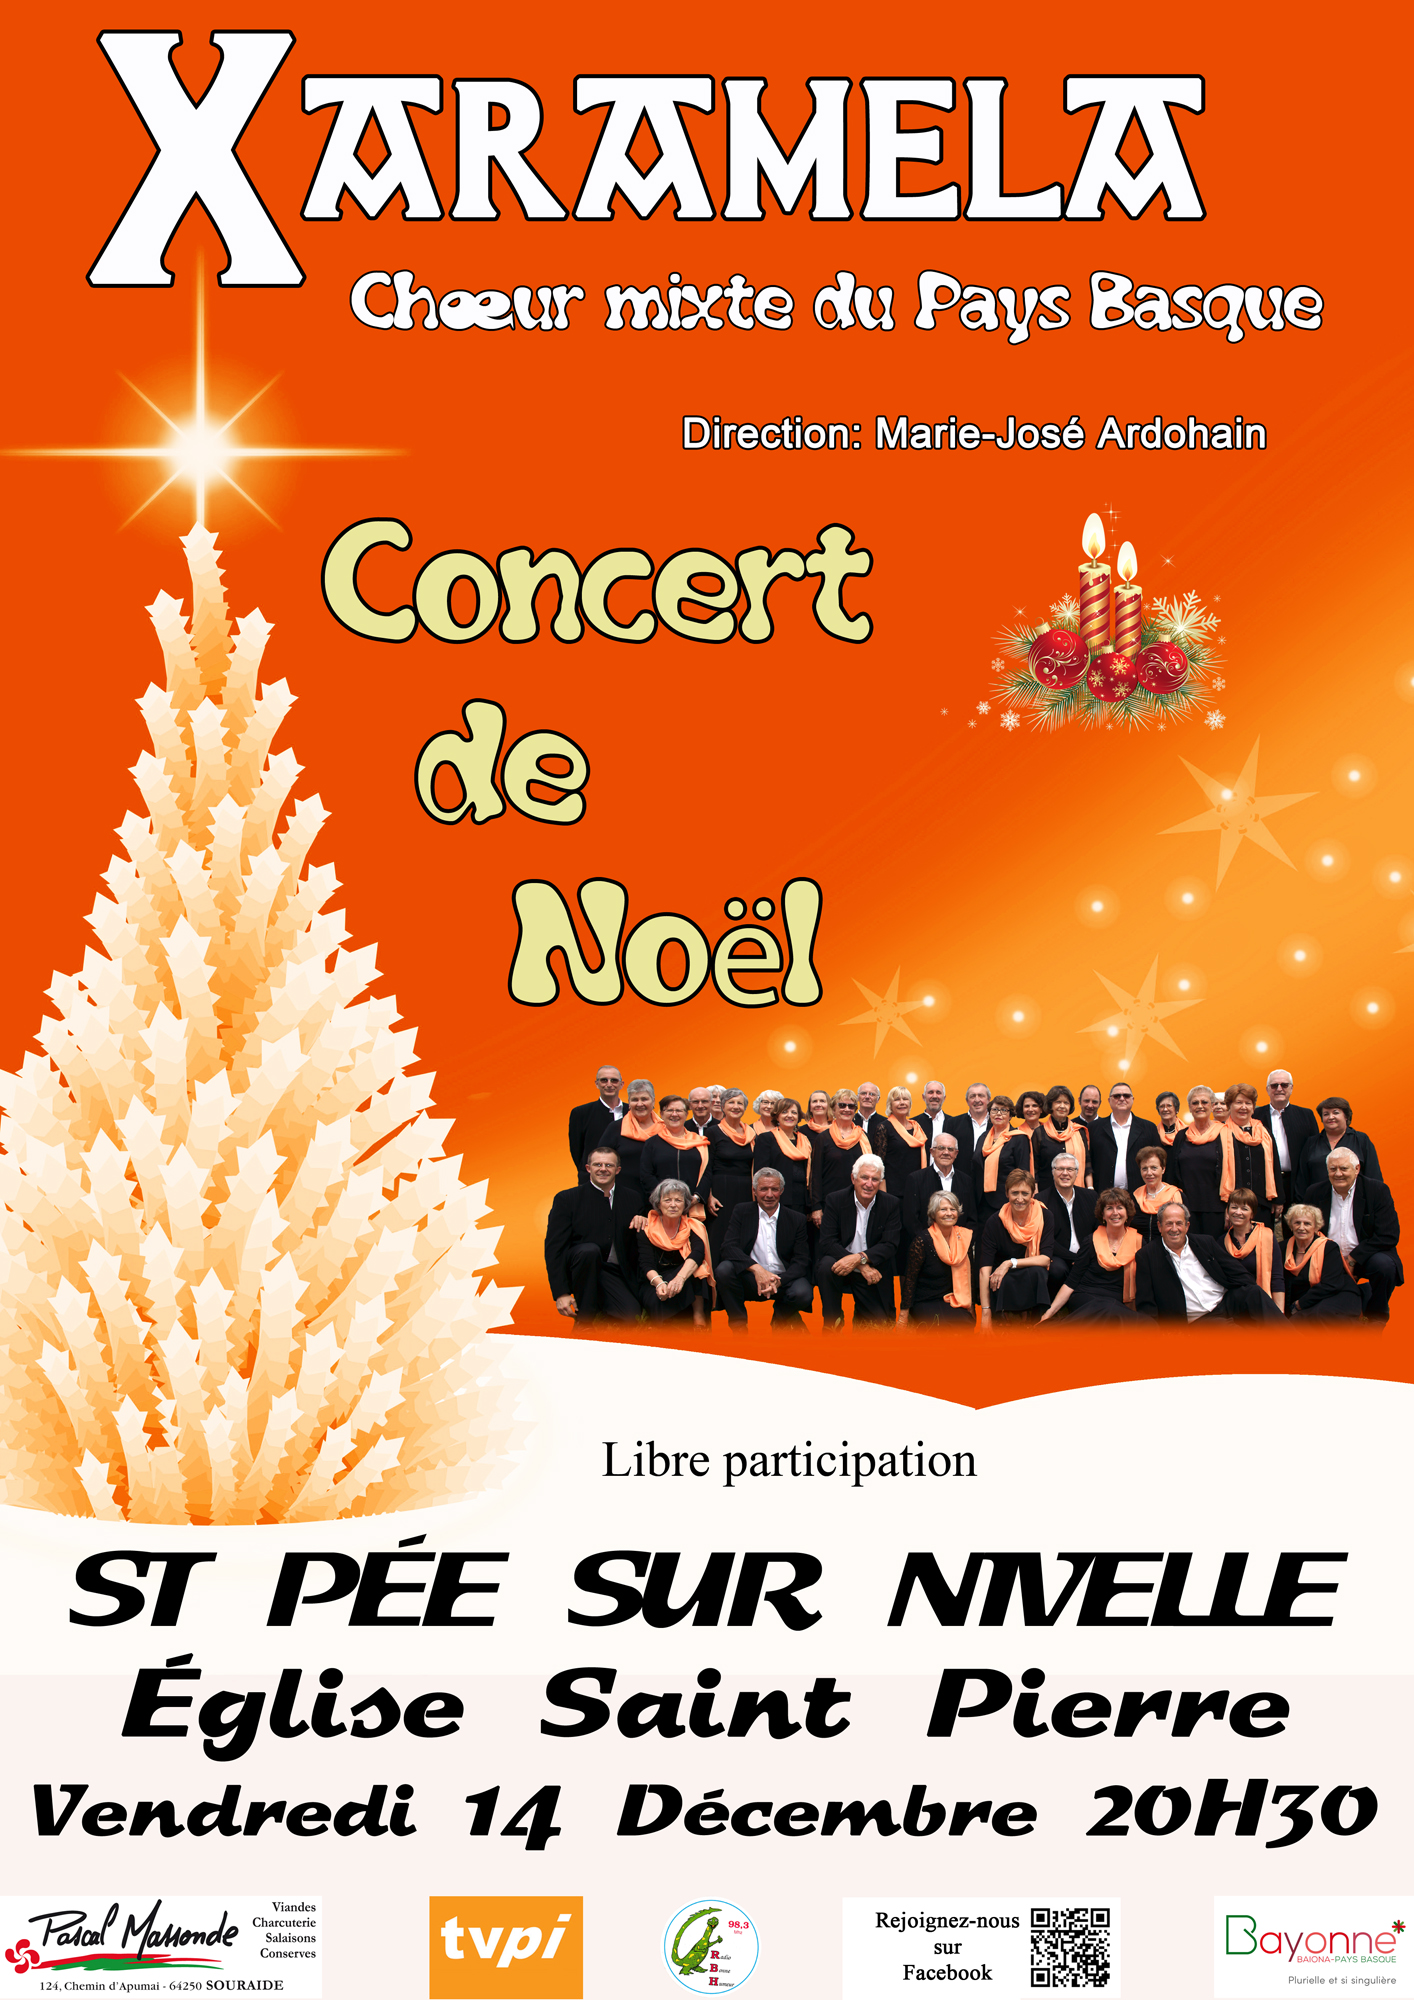 Concert de Noël du Choeur Xaramela le 14 décembre 2018 à Saint-Pée-sur-Nivelle (64)